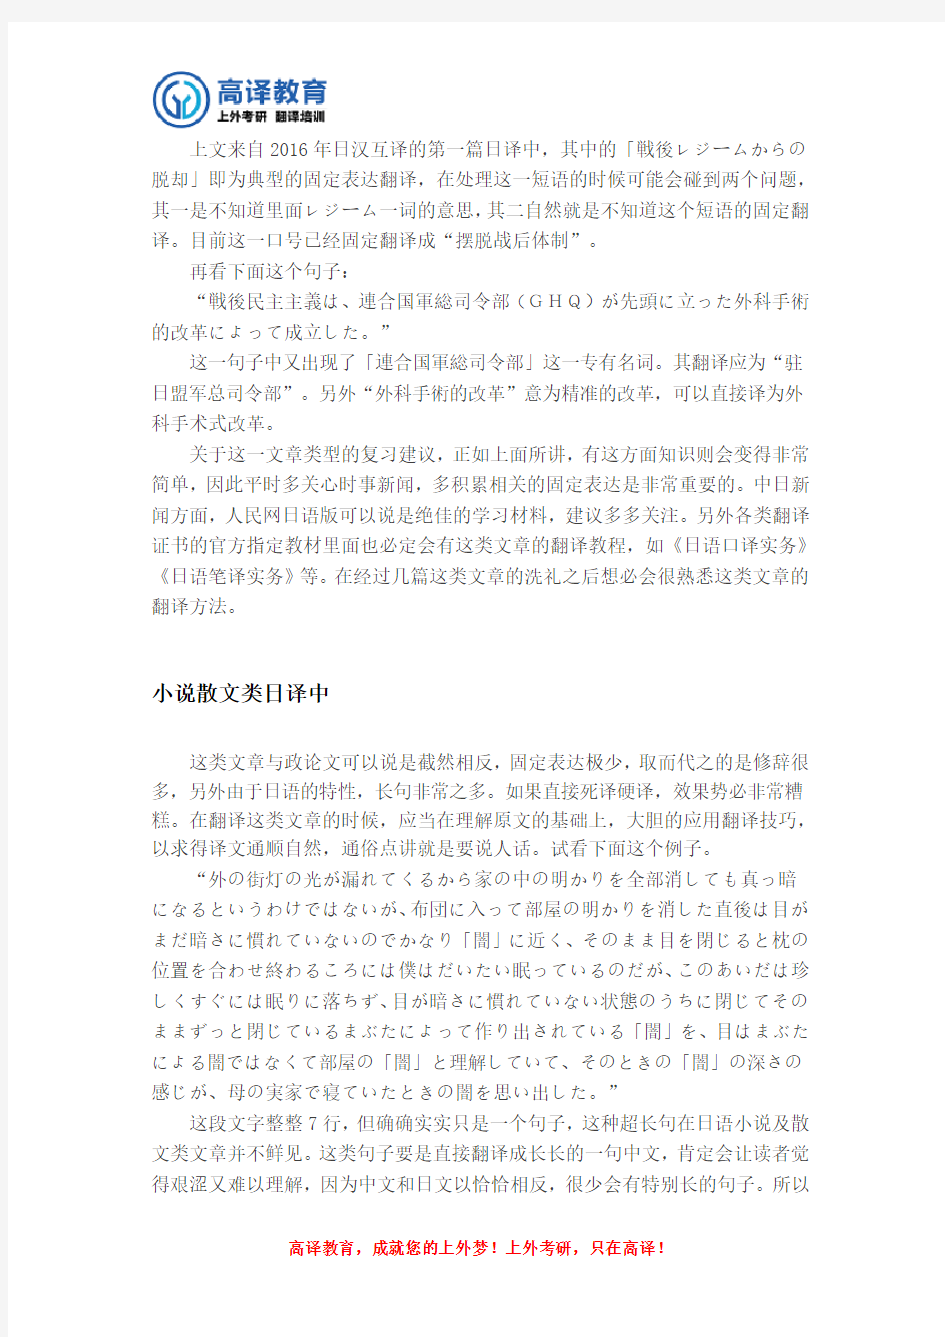 上海外国语大学日语语言文学考研科目 日汉互译试题分析及复习建议